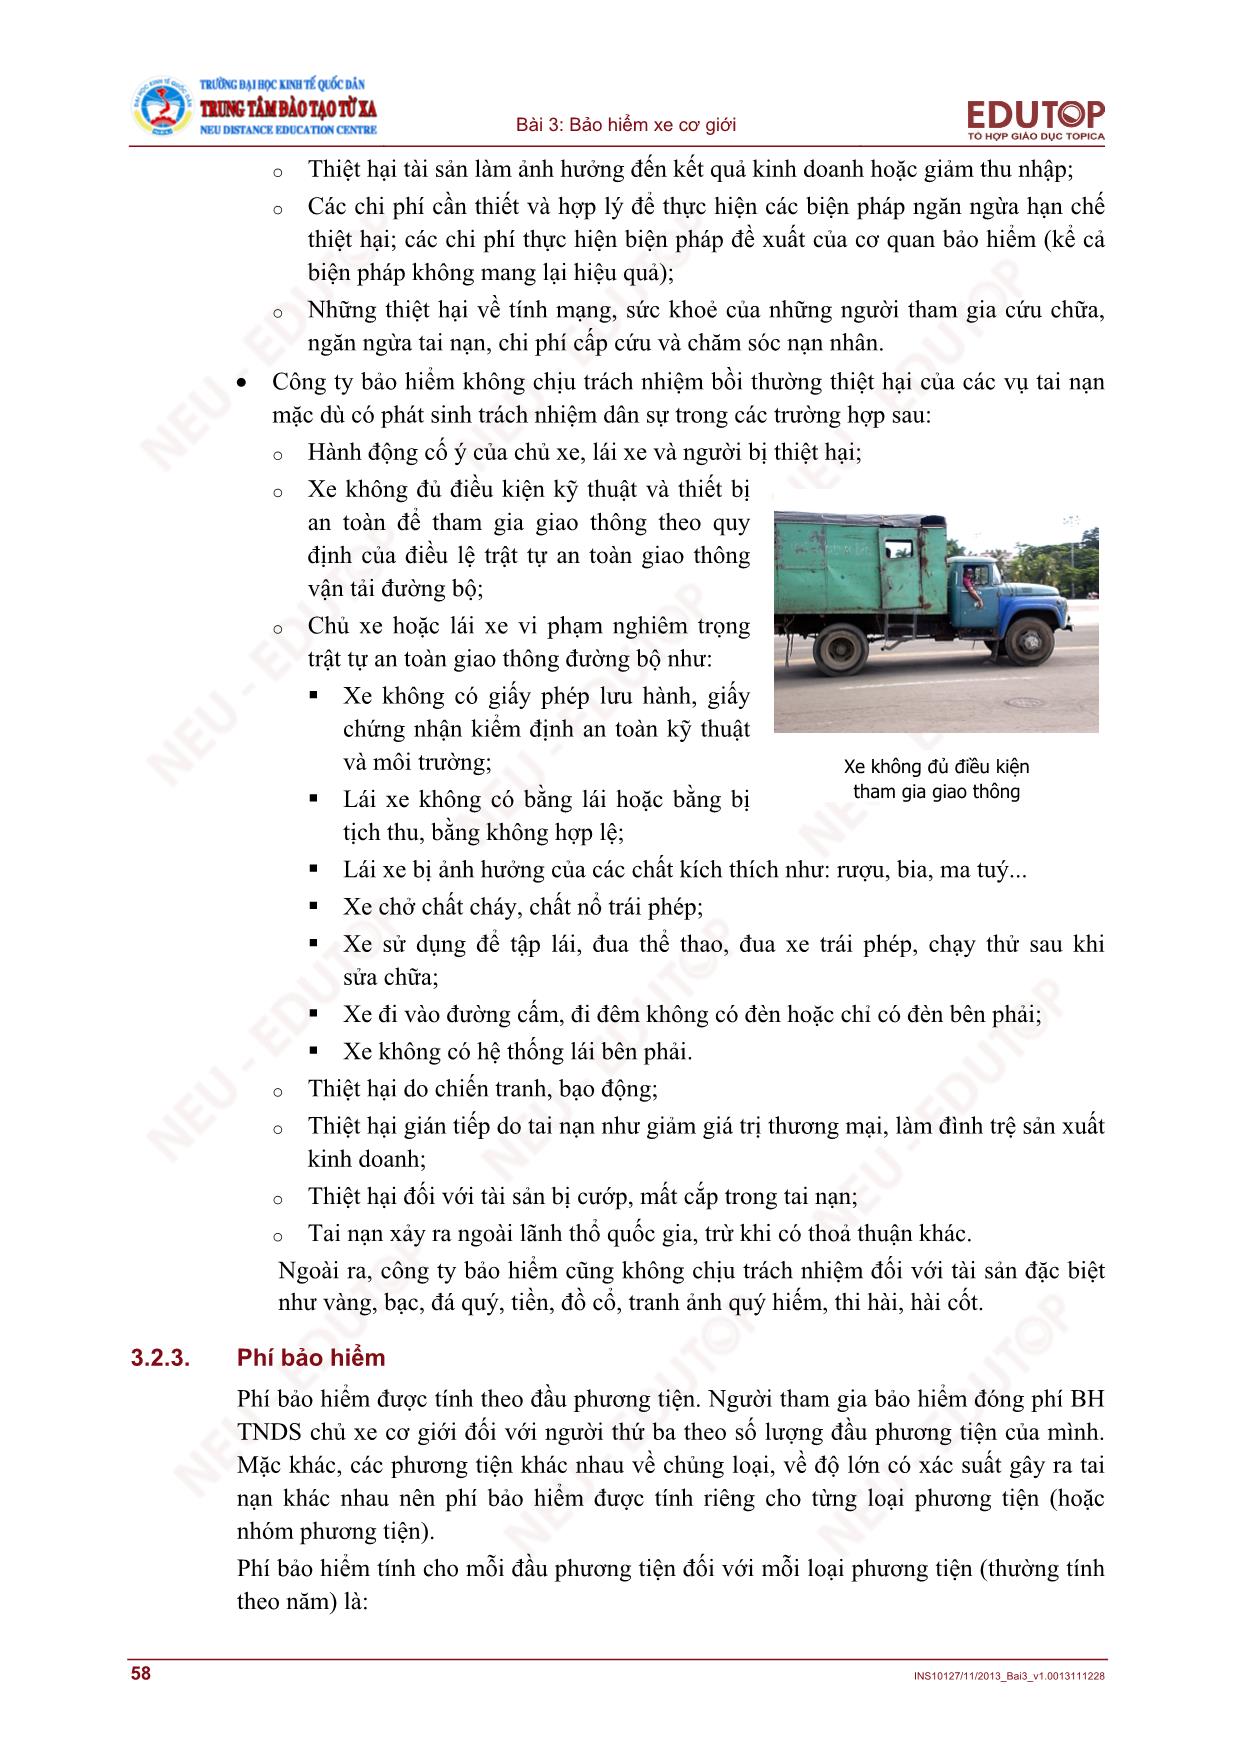 Bài giảng Bảo hiểm thương mại - Bài 3, Phần 2: Bảo hiểm xe cơ giới - Nguyễn Thị Lệ Huyền trang 4